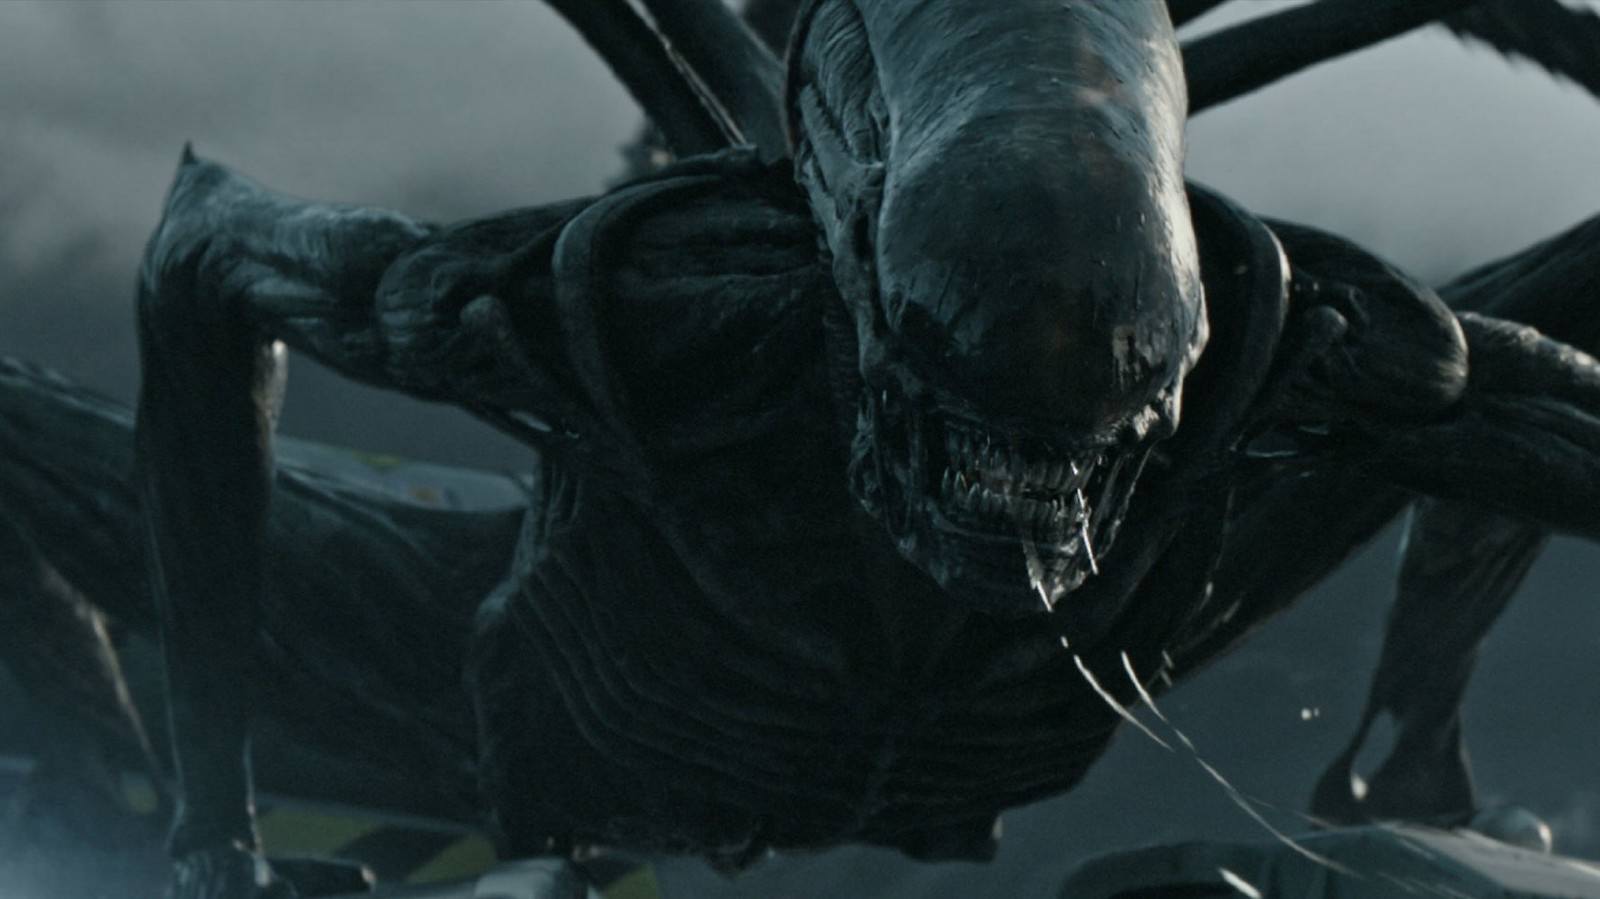 Movie, Alien: Covenant(美國, 2017年) / 異形：聖約(台灣.香港) / 异形：契约(中國), 電影角色與演員介紹